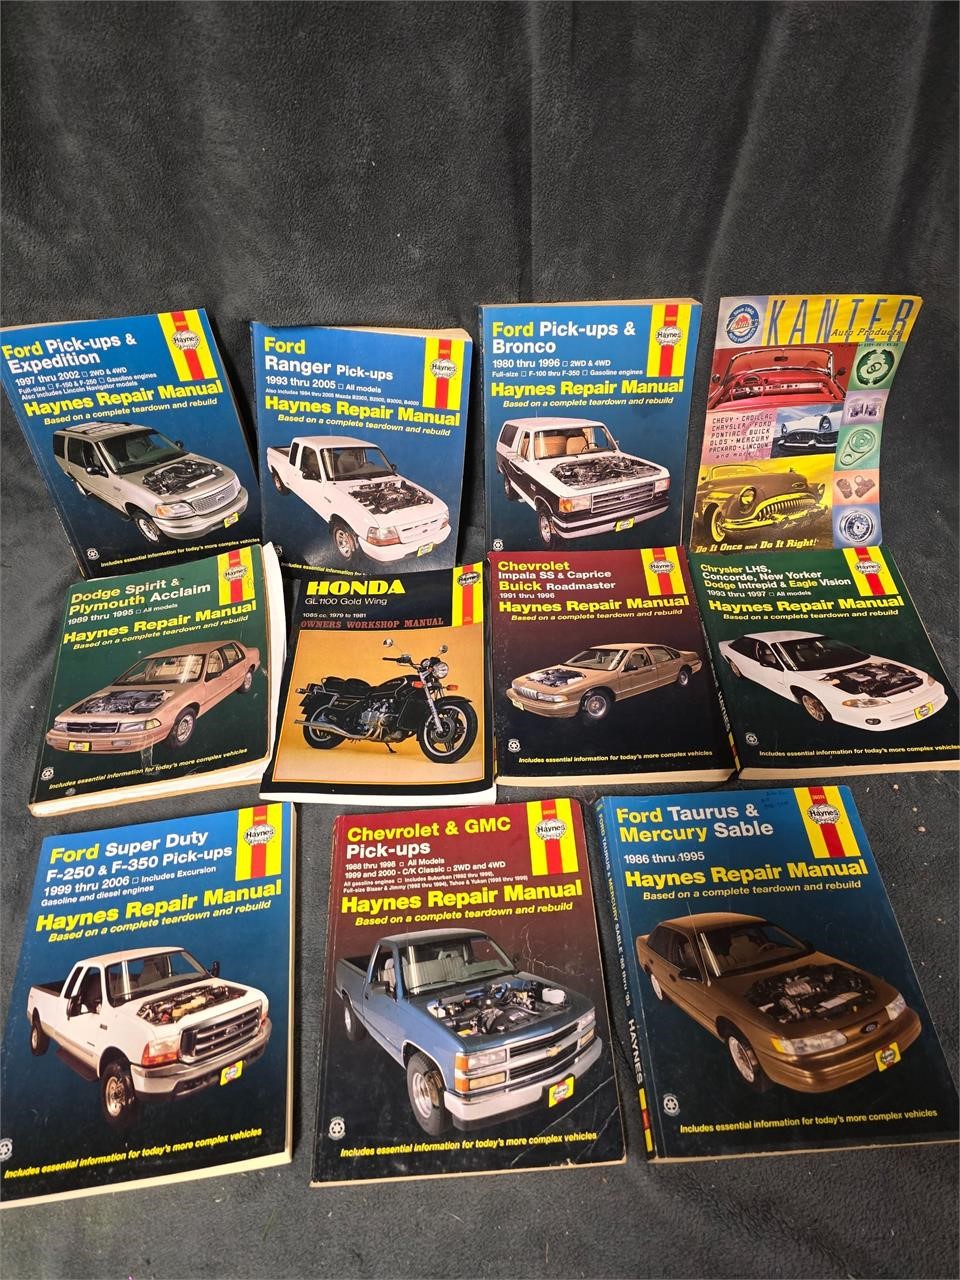 Vehicle repair manuals lot of 11